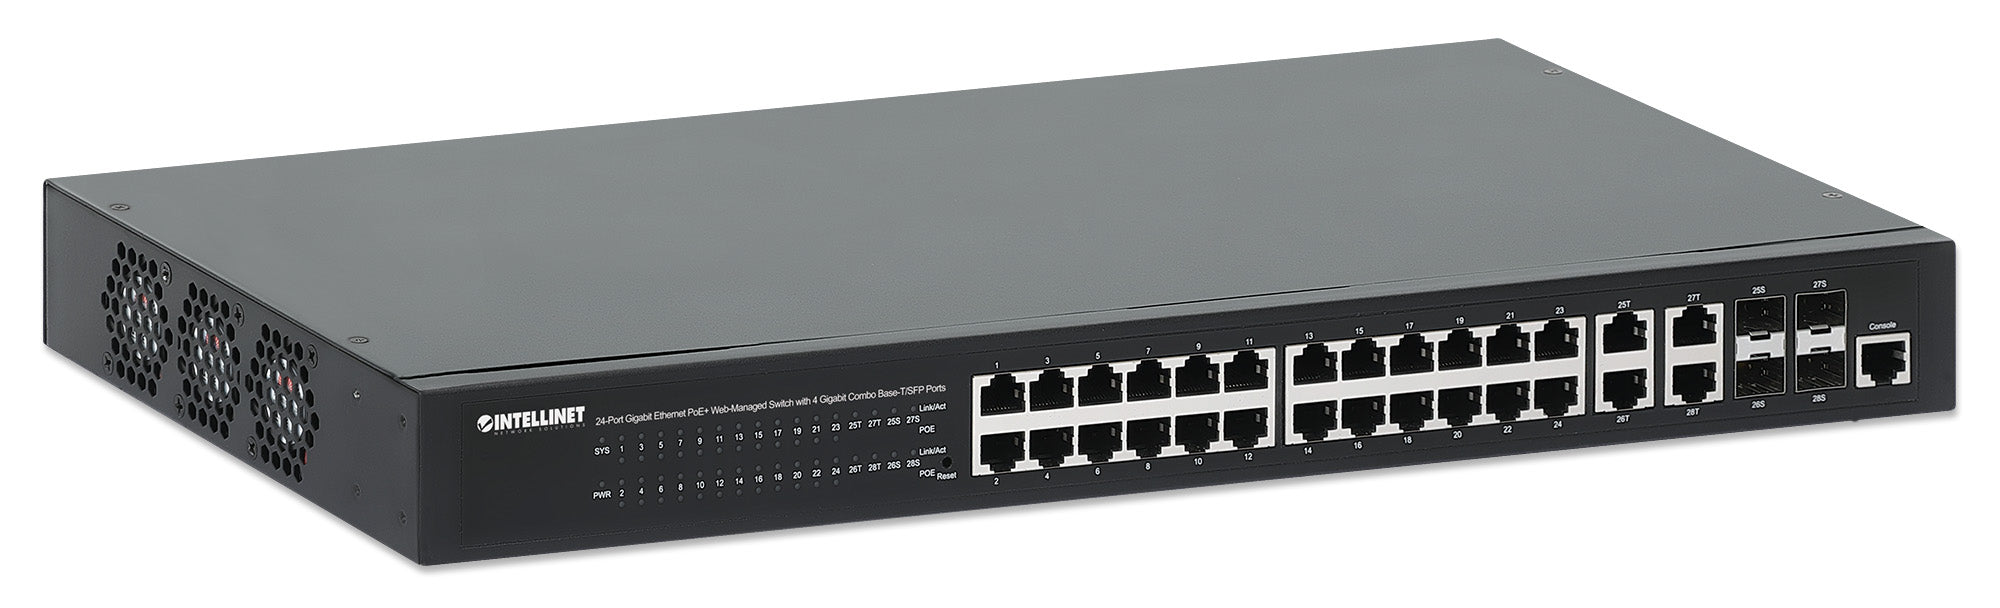 Intellinet Commutateur Gigabit Ethernet PoE+ 24-ports géré par une  interface internet avec 4 ports Gigabit combo base-T/SFP (561426)